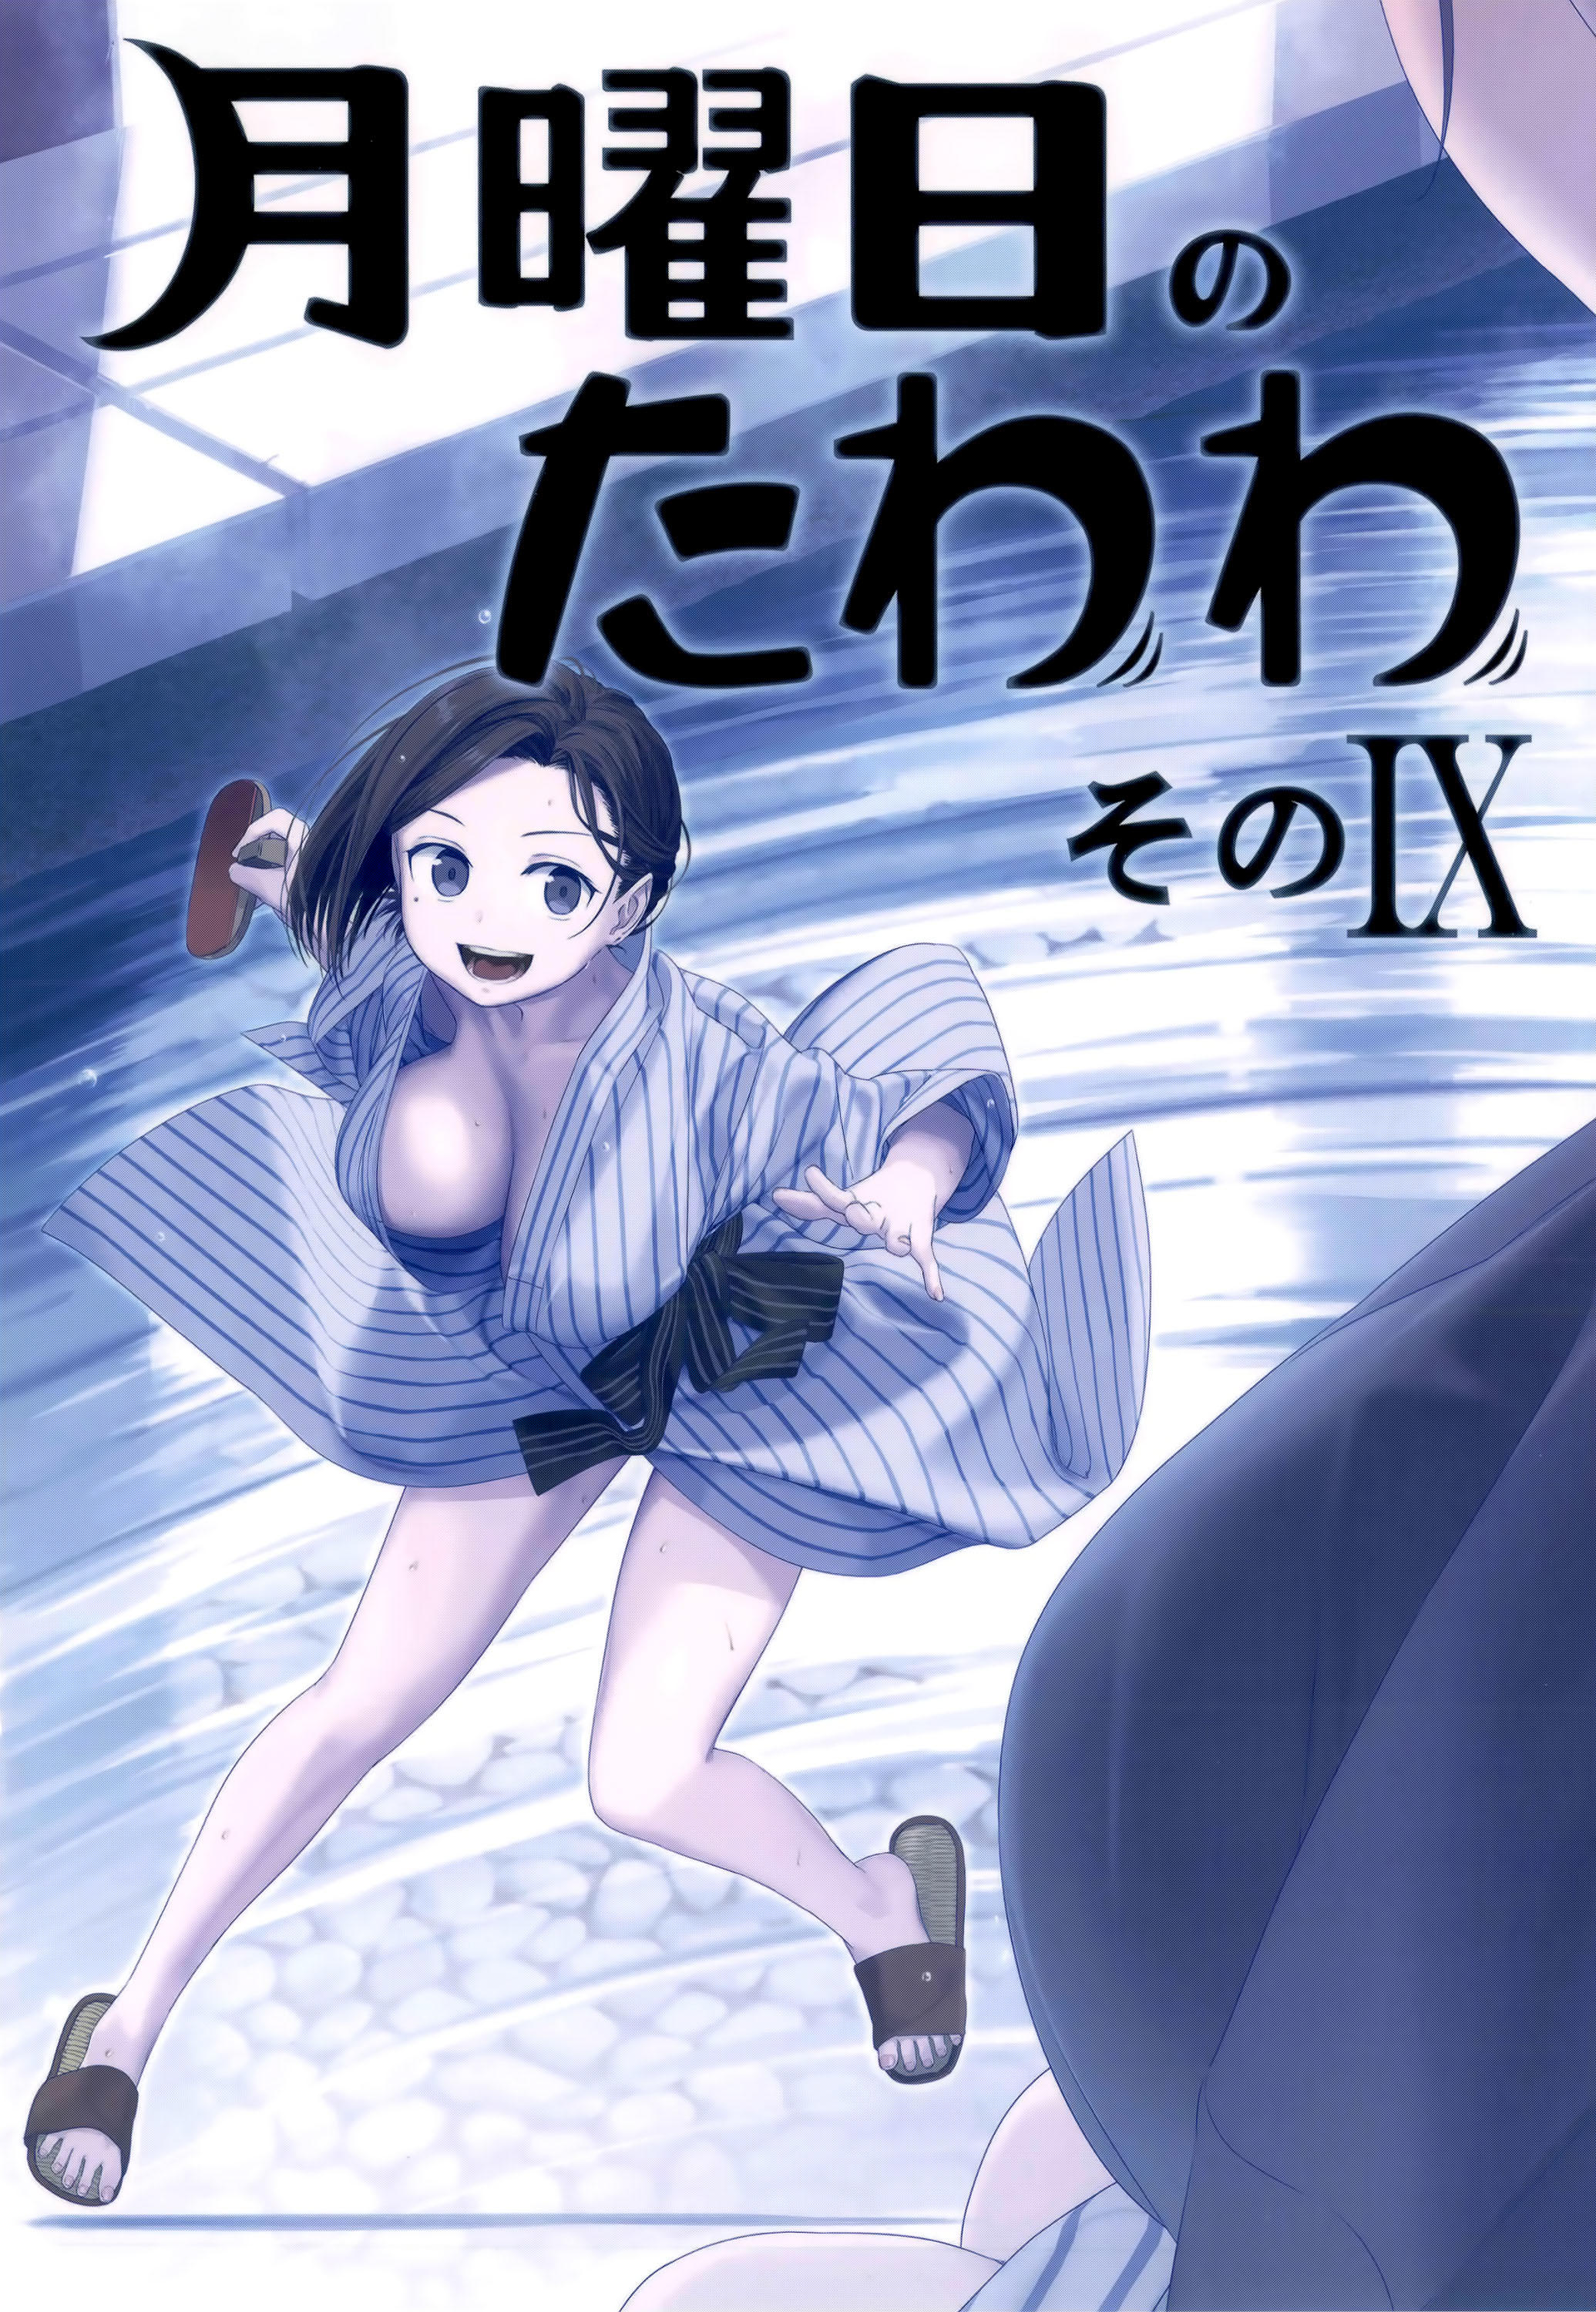 Read Getsuyoubi No Tawawa Chapter 85 on Mangakakalot